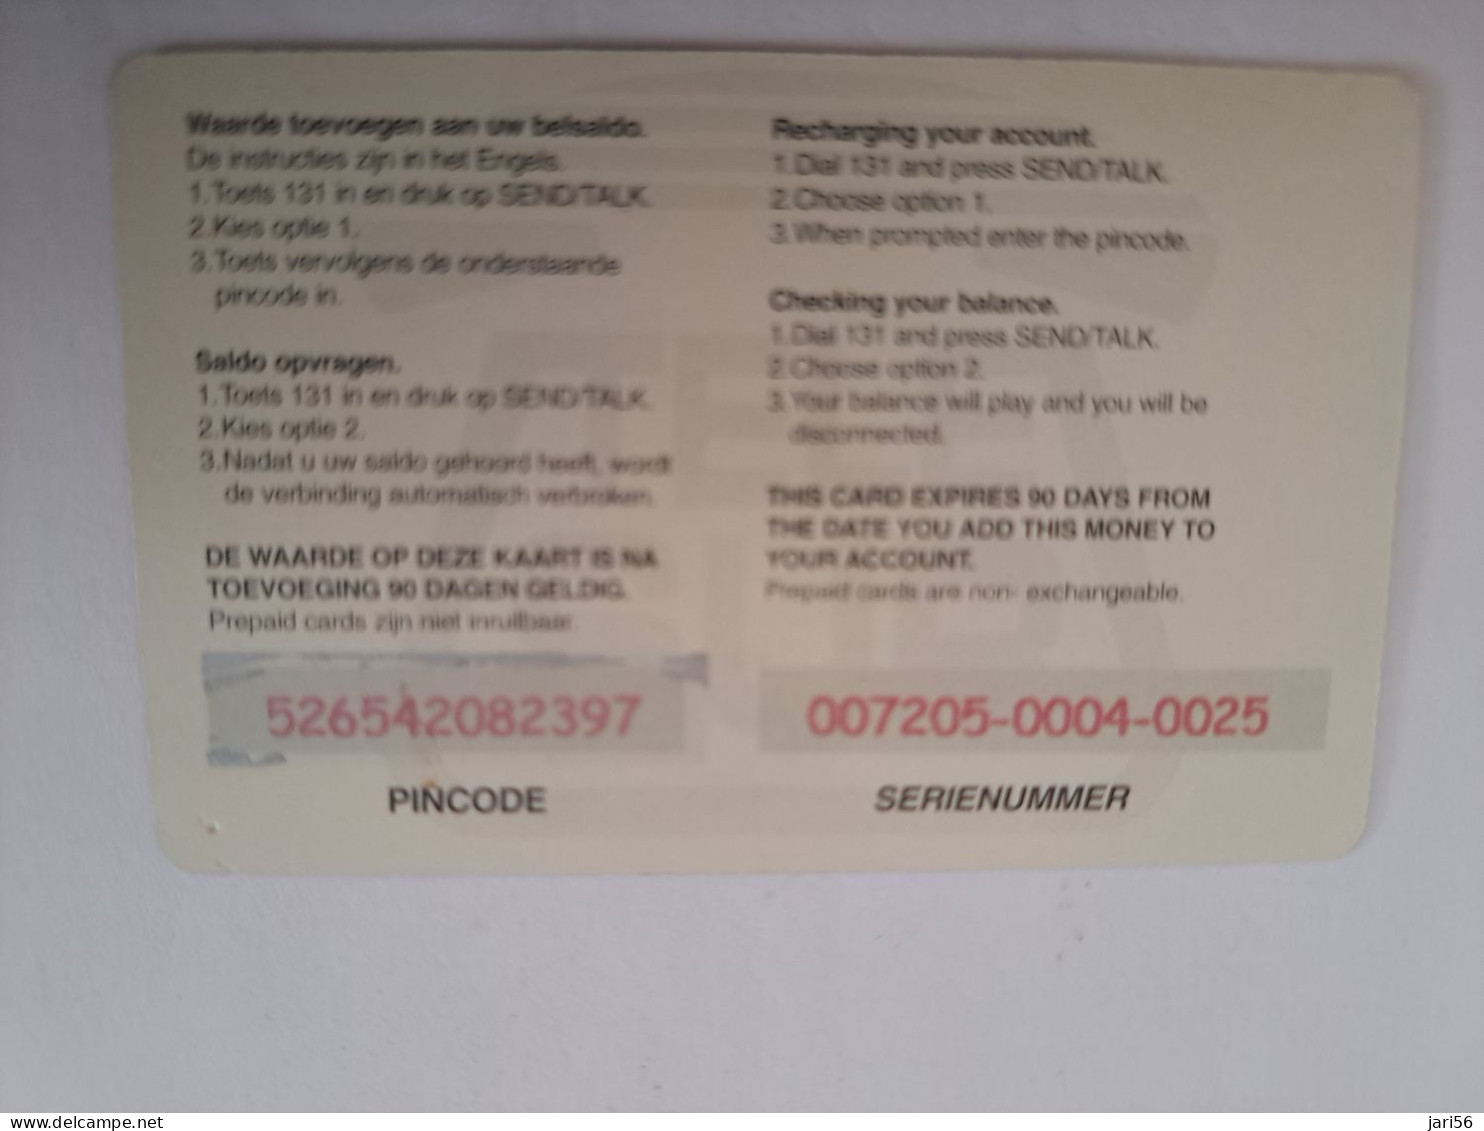 SURINAME US $ 10,-     PREPAID / TELESUR  / MAN ON DRUM  / FINE USED CARD            **14904** - Suriname